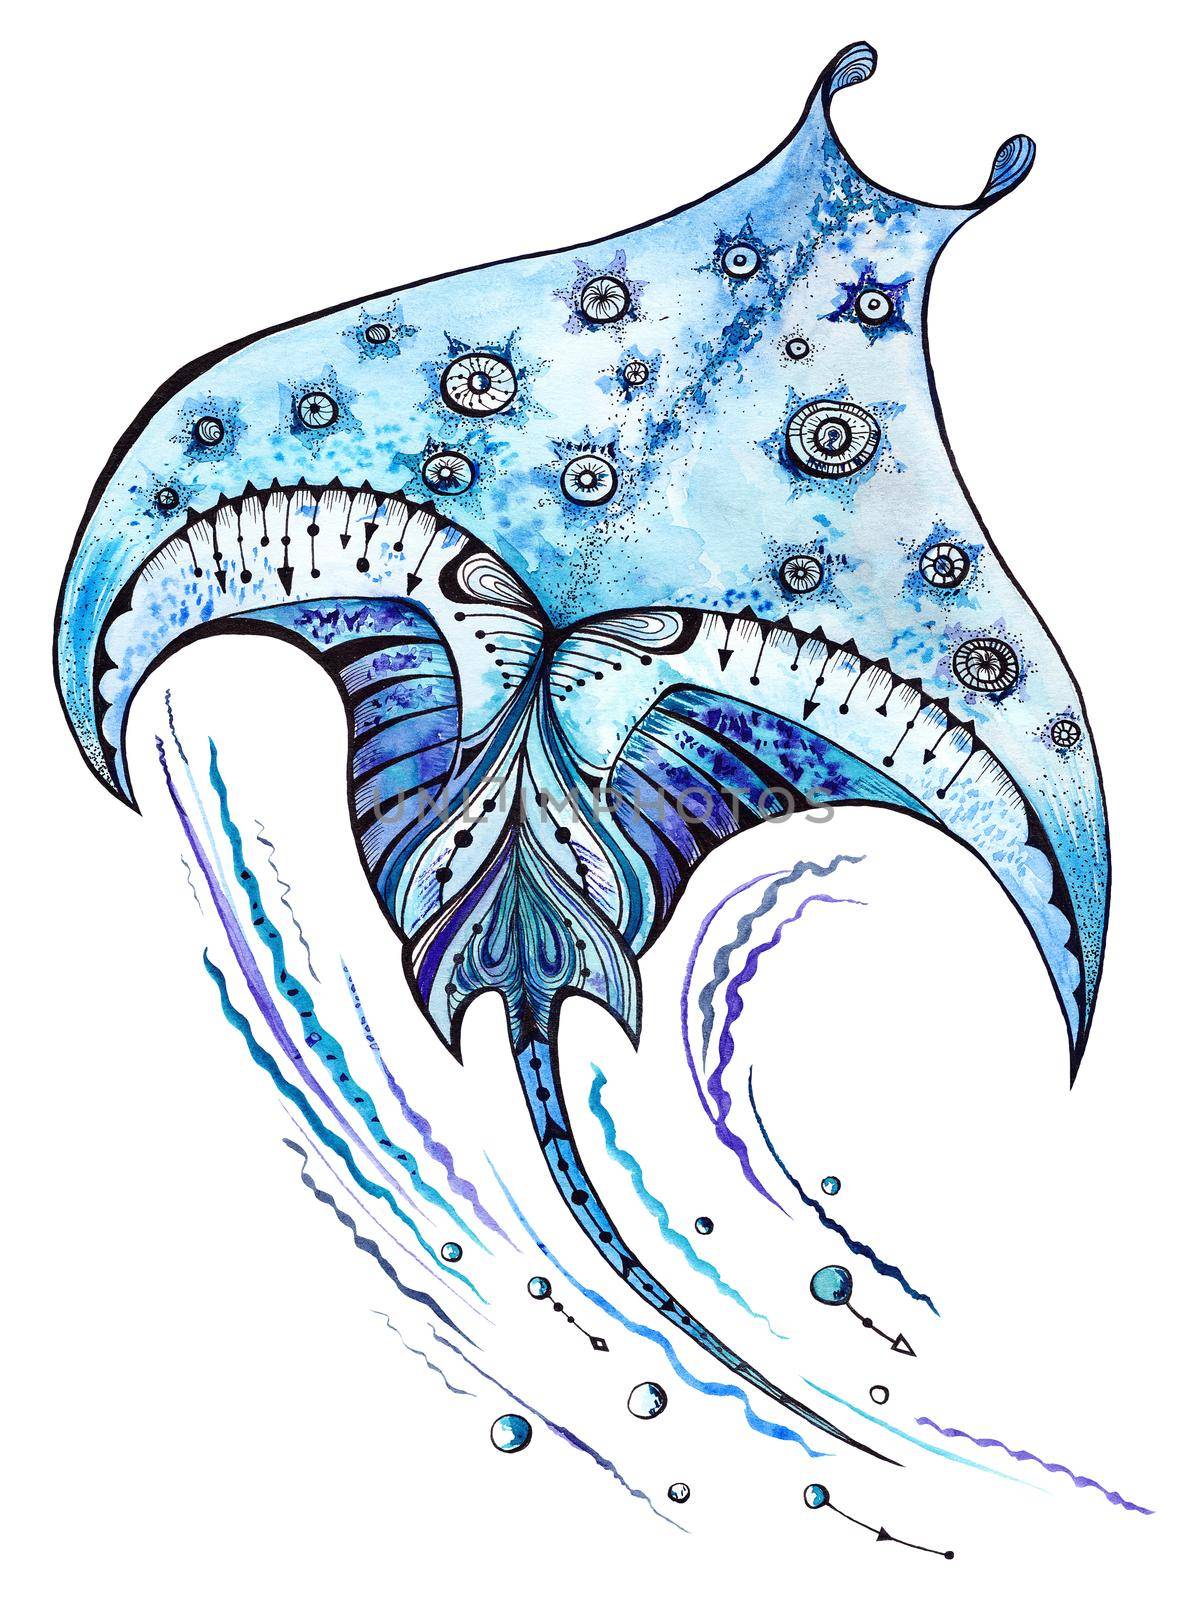 Manta ray sea animal watercolor and ink illustration by kisika